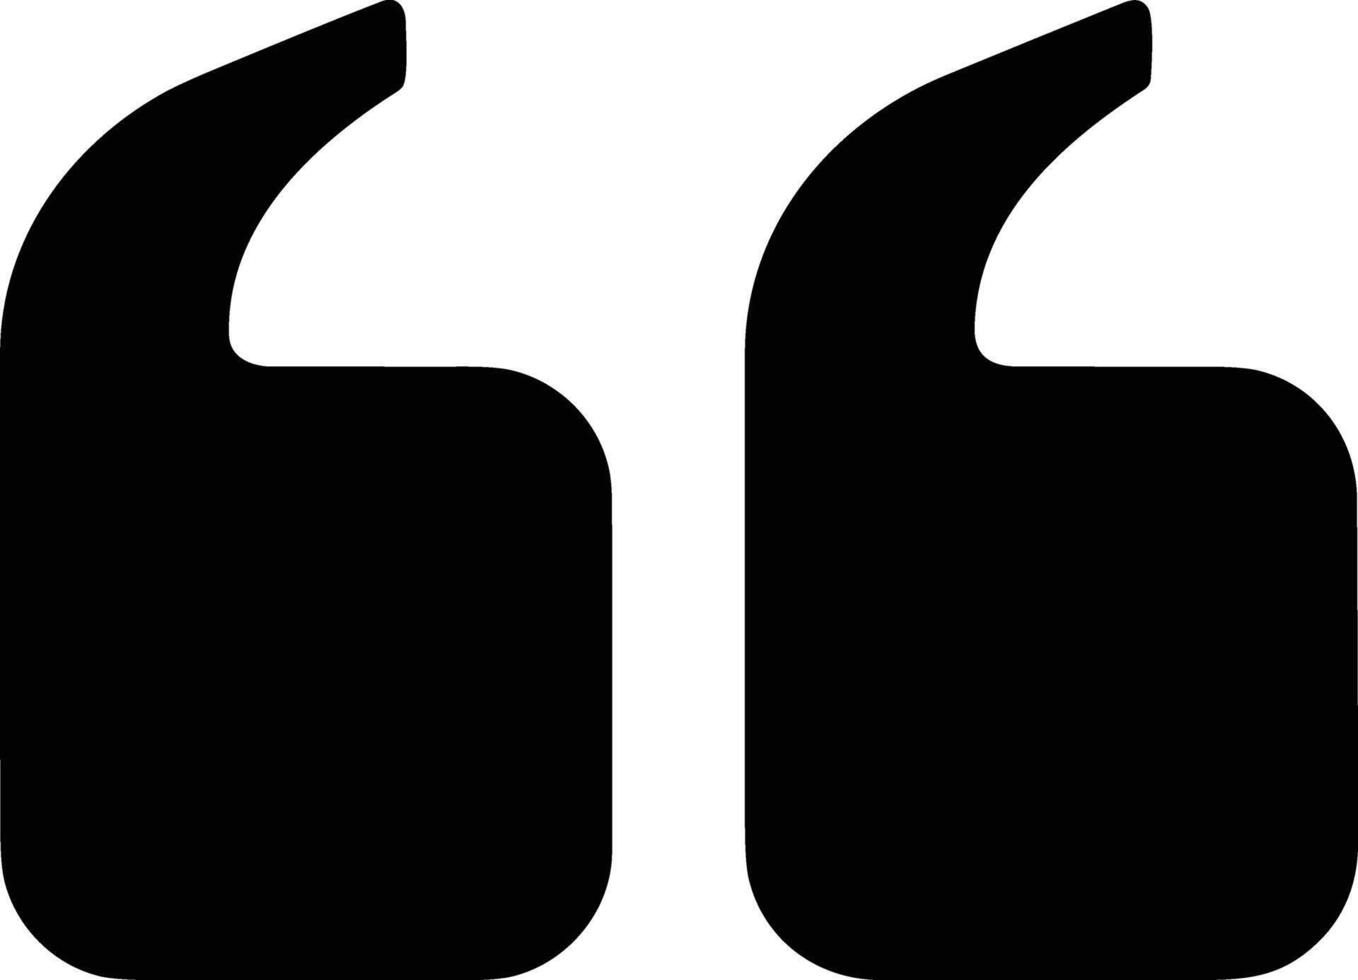 Kommentar Symbol Bild zum Element Design von Plaudern und Kommunikation Symbol vektor